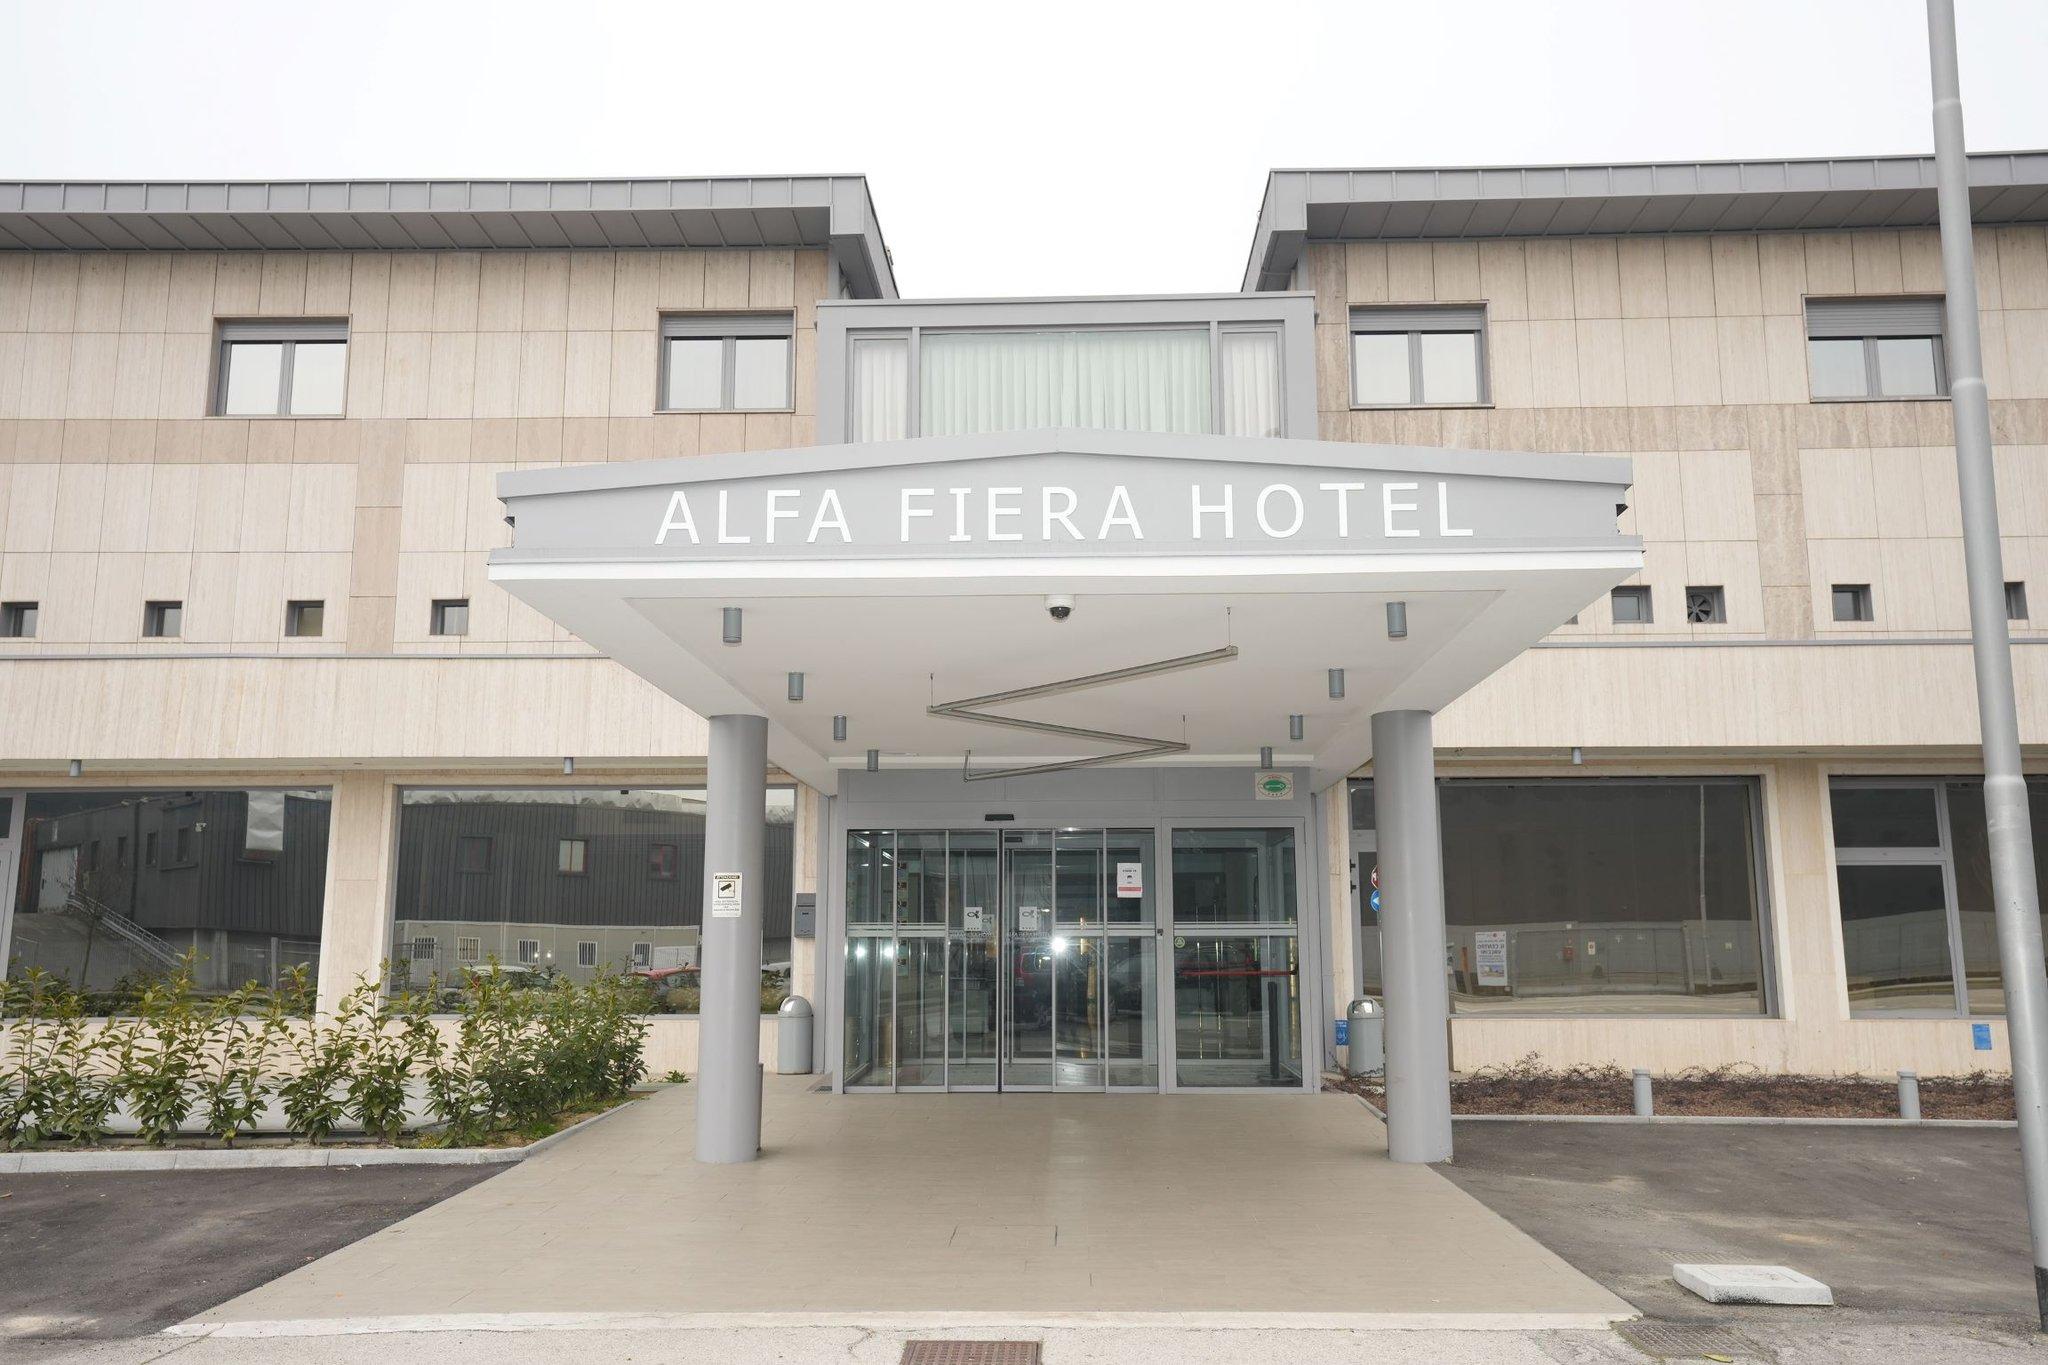 Alfa Fiera Hotel in Vicenza, IT